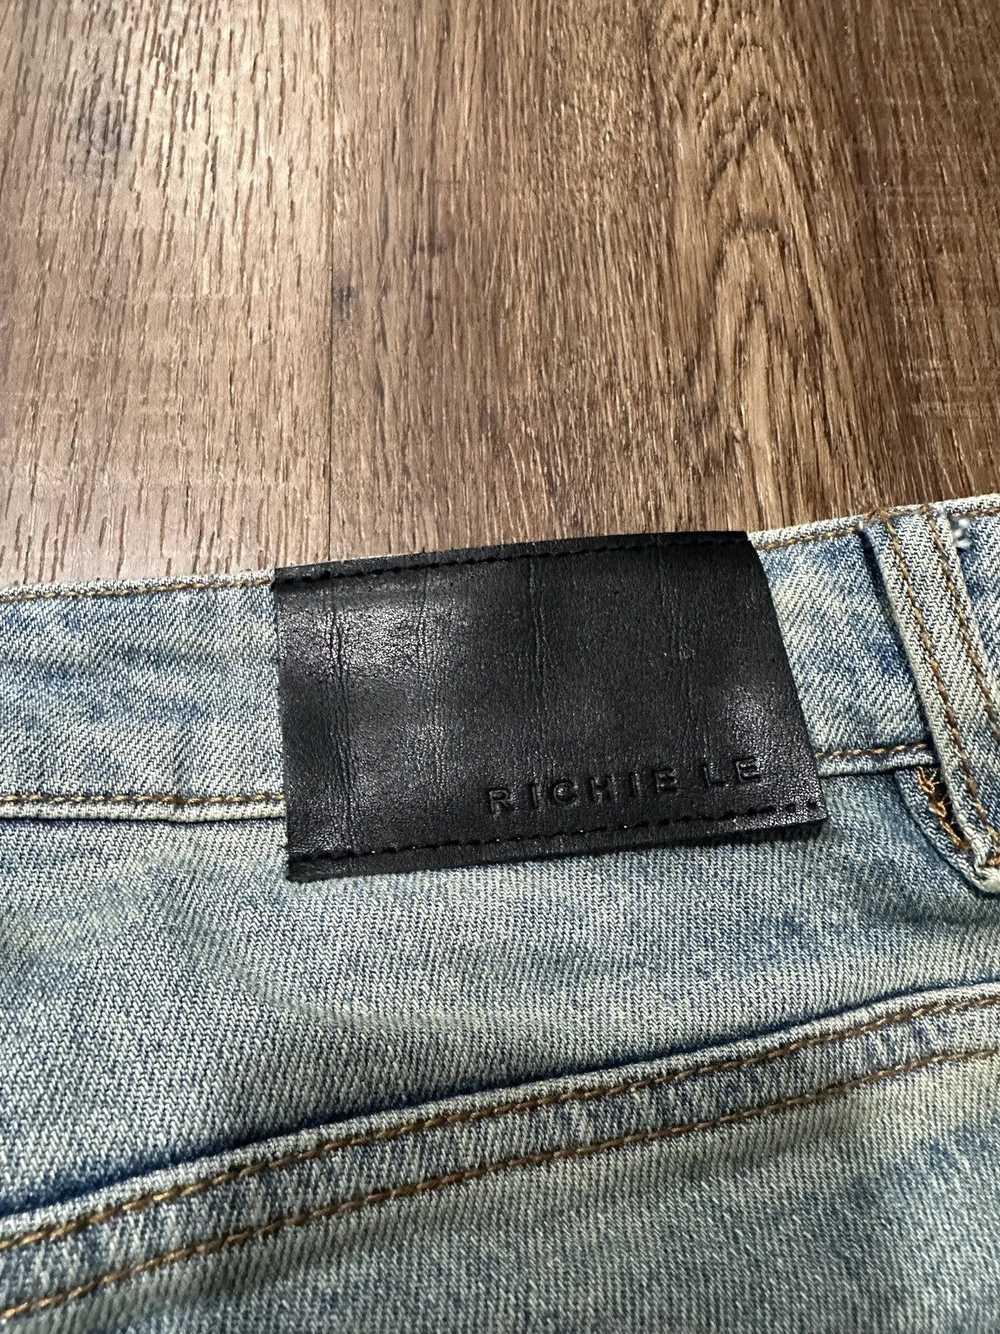 Richie Le Collection × Streetwear Richie le Colle… - image 4